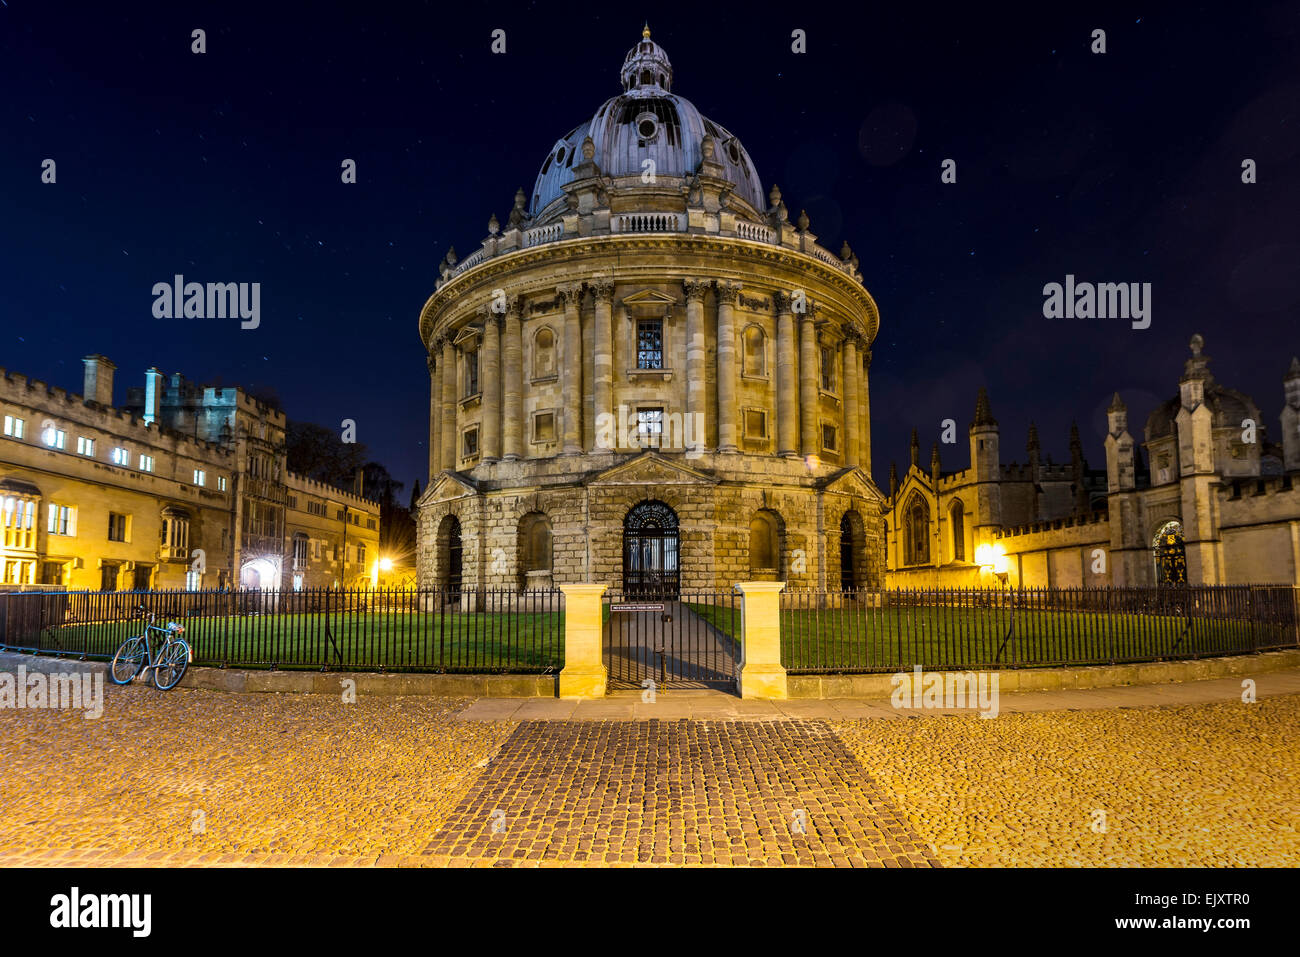 Die Radcliffe Camera ist ein Lesesaal der Bodleian Library, Oxford University Teil. Hier in der Nacht zu sehen. Stockfoto